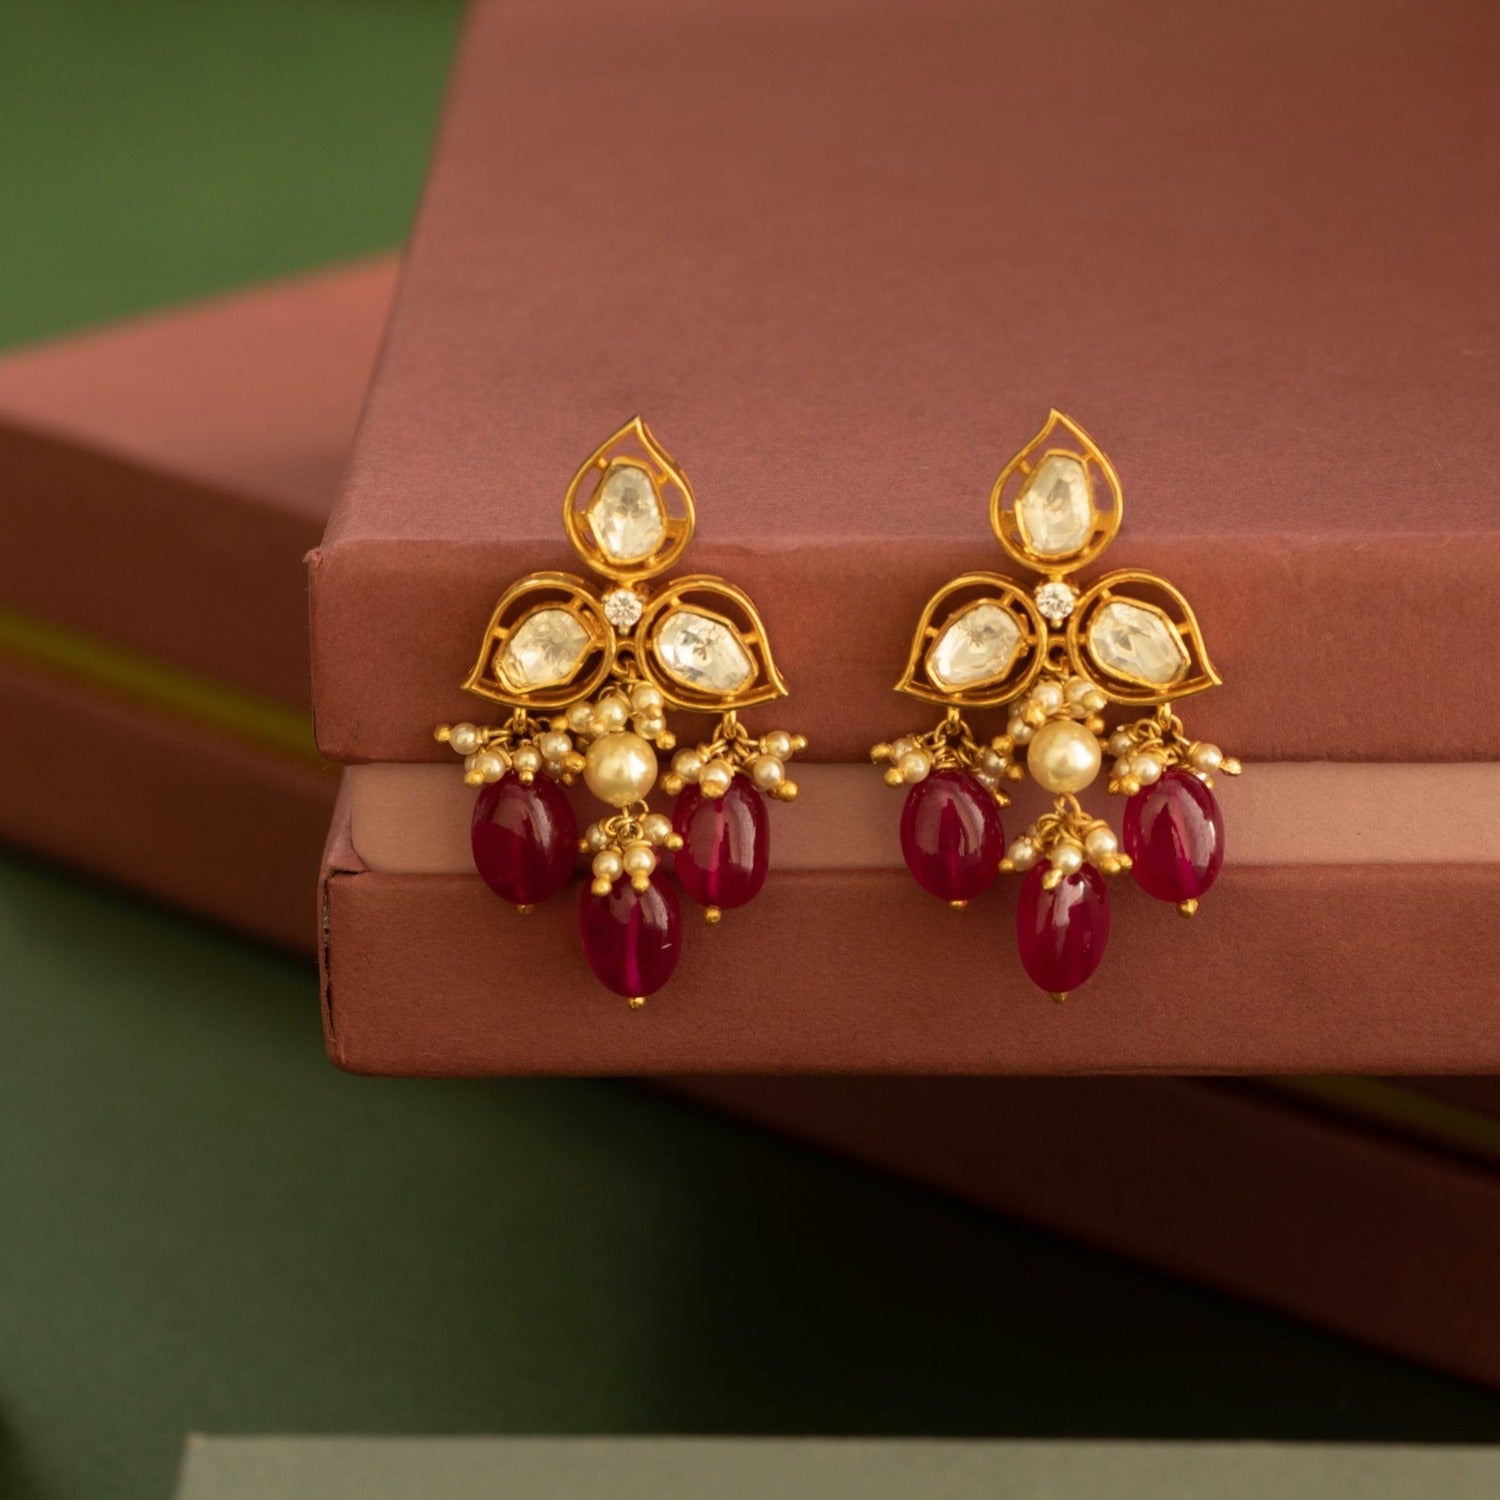 Buy Stunning Party Wear Earrings Online in India | Madanji Meghraj